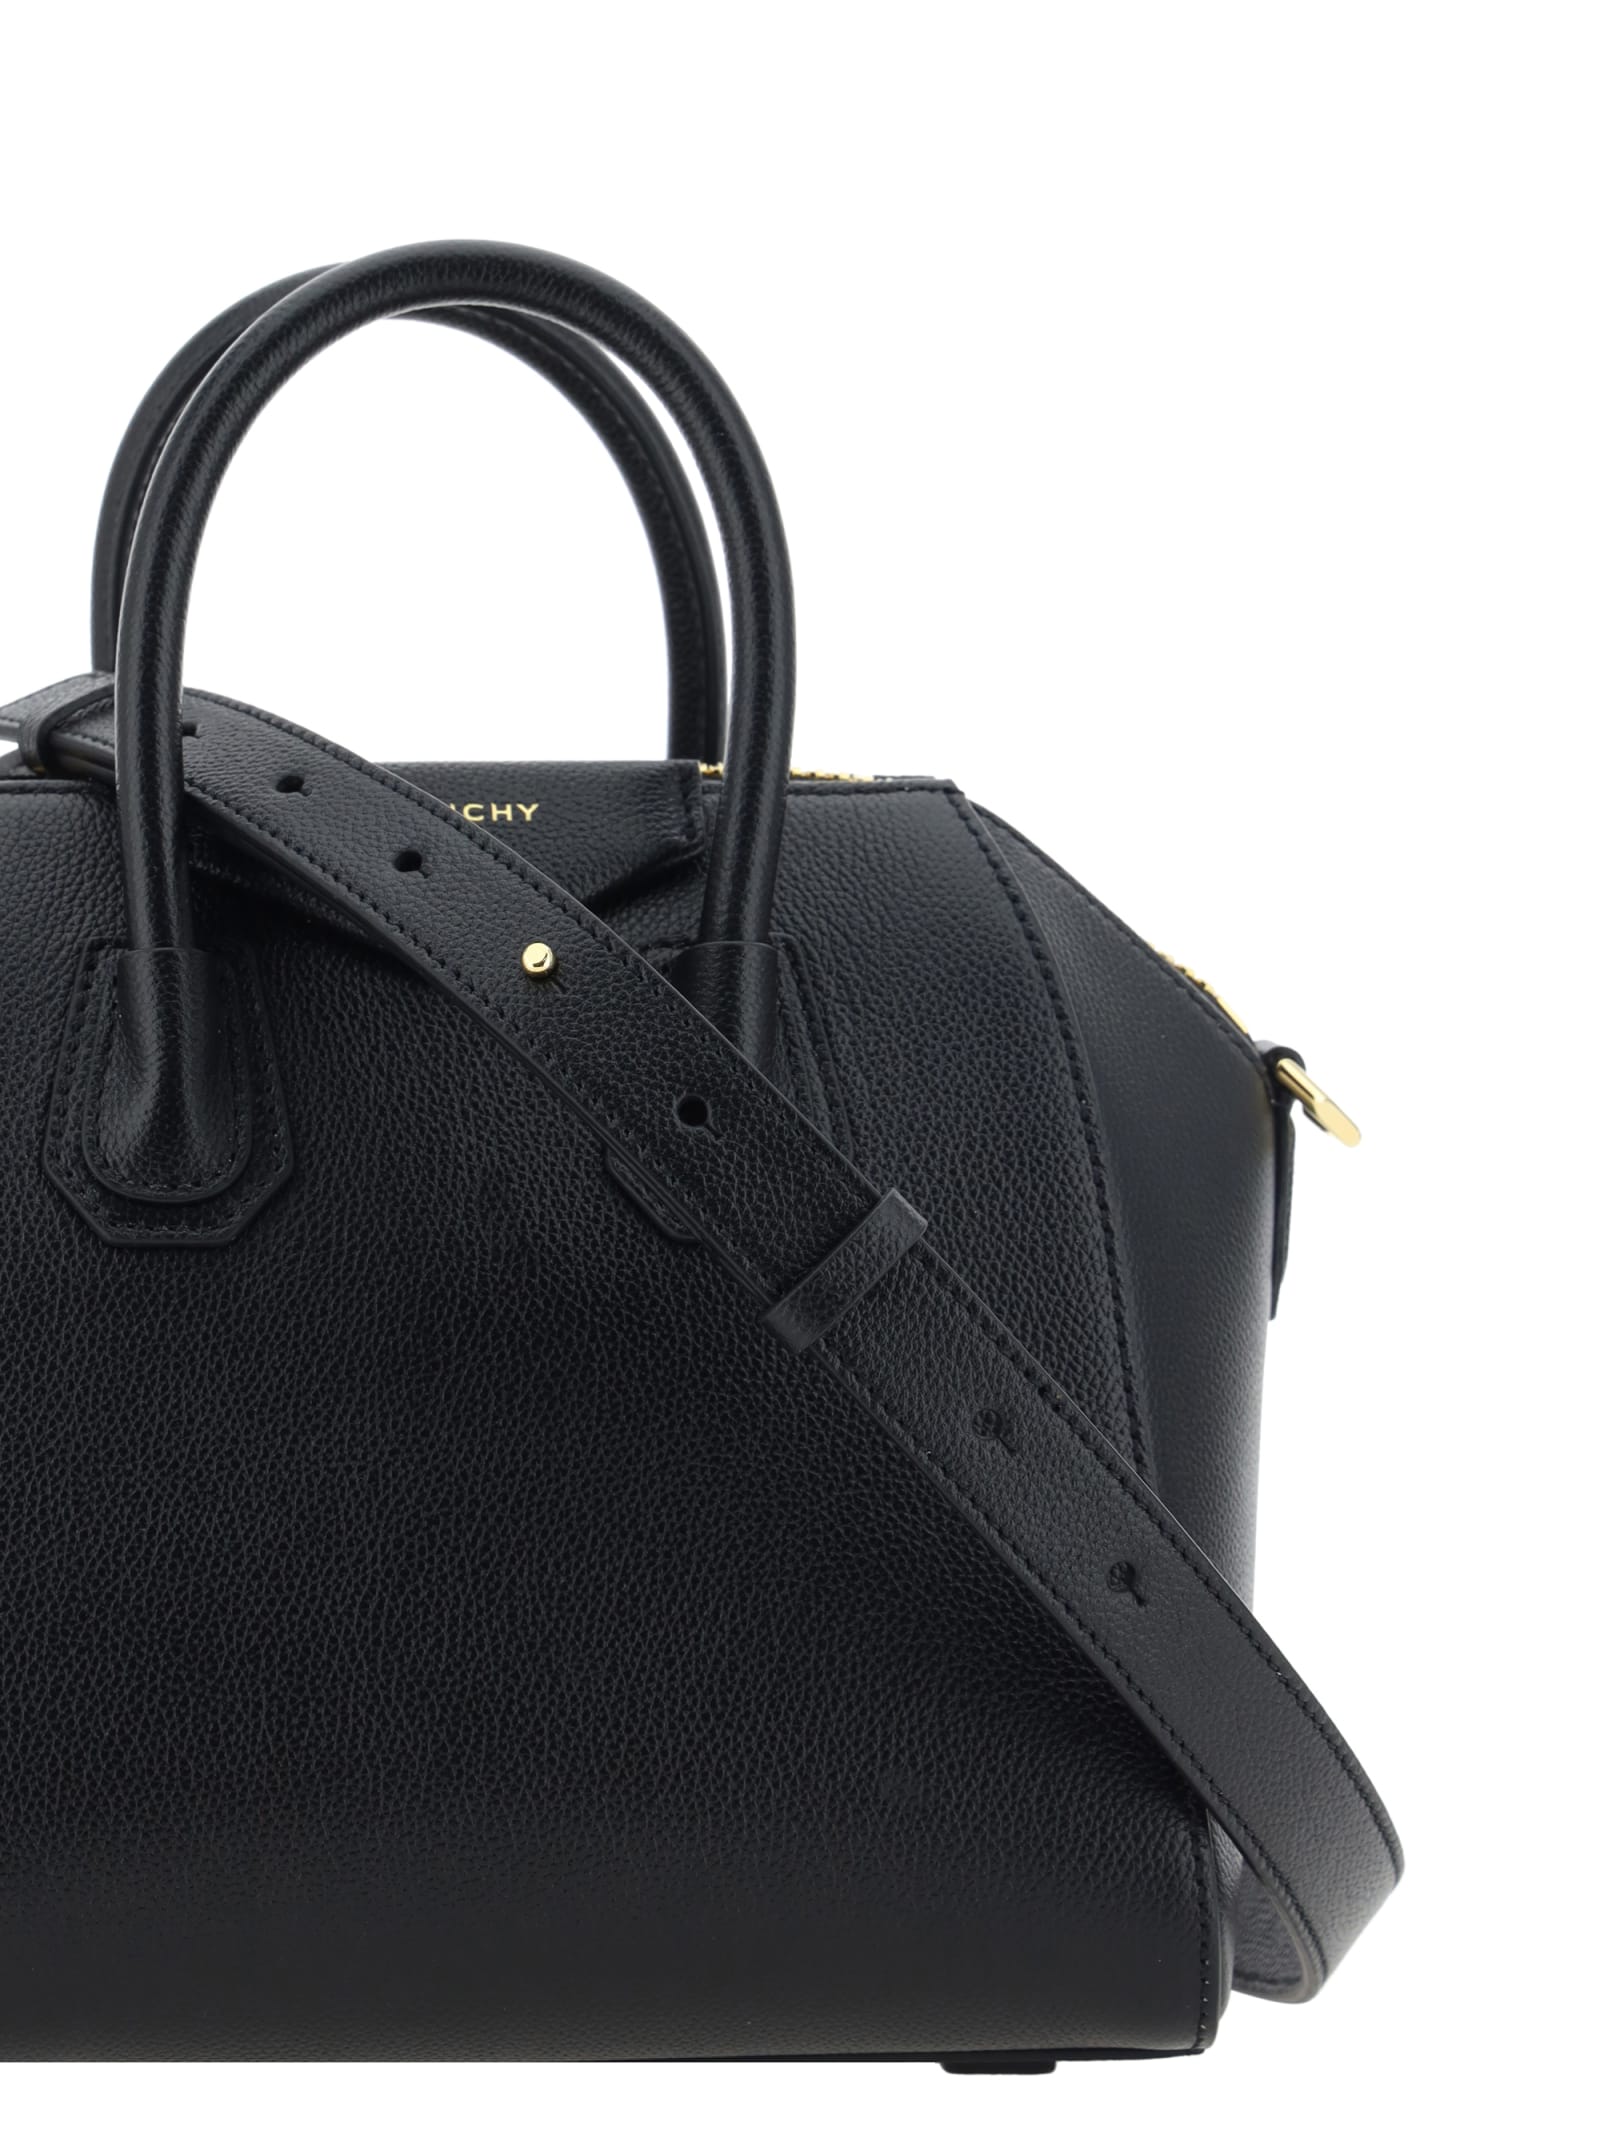 Shop Givenchy Antigona Handbag In Black